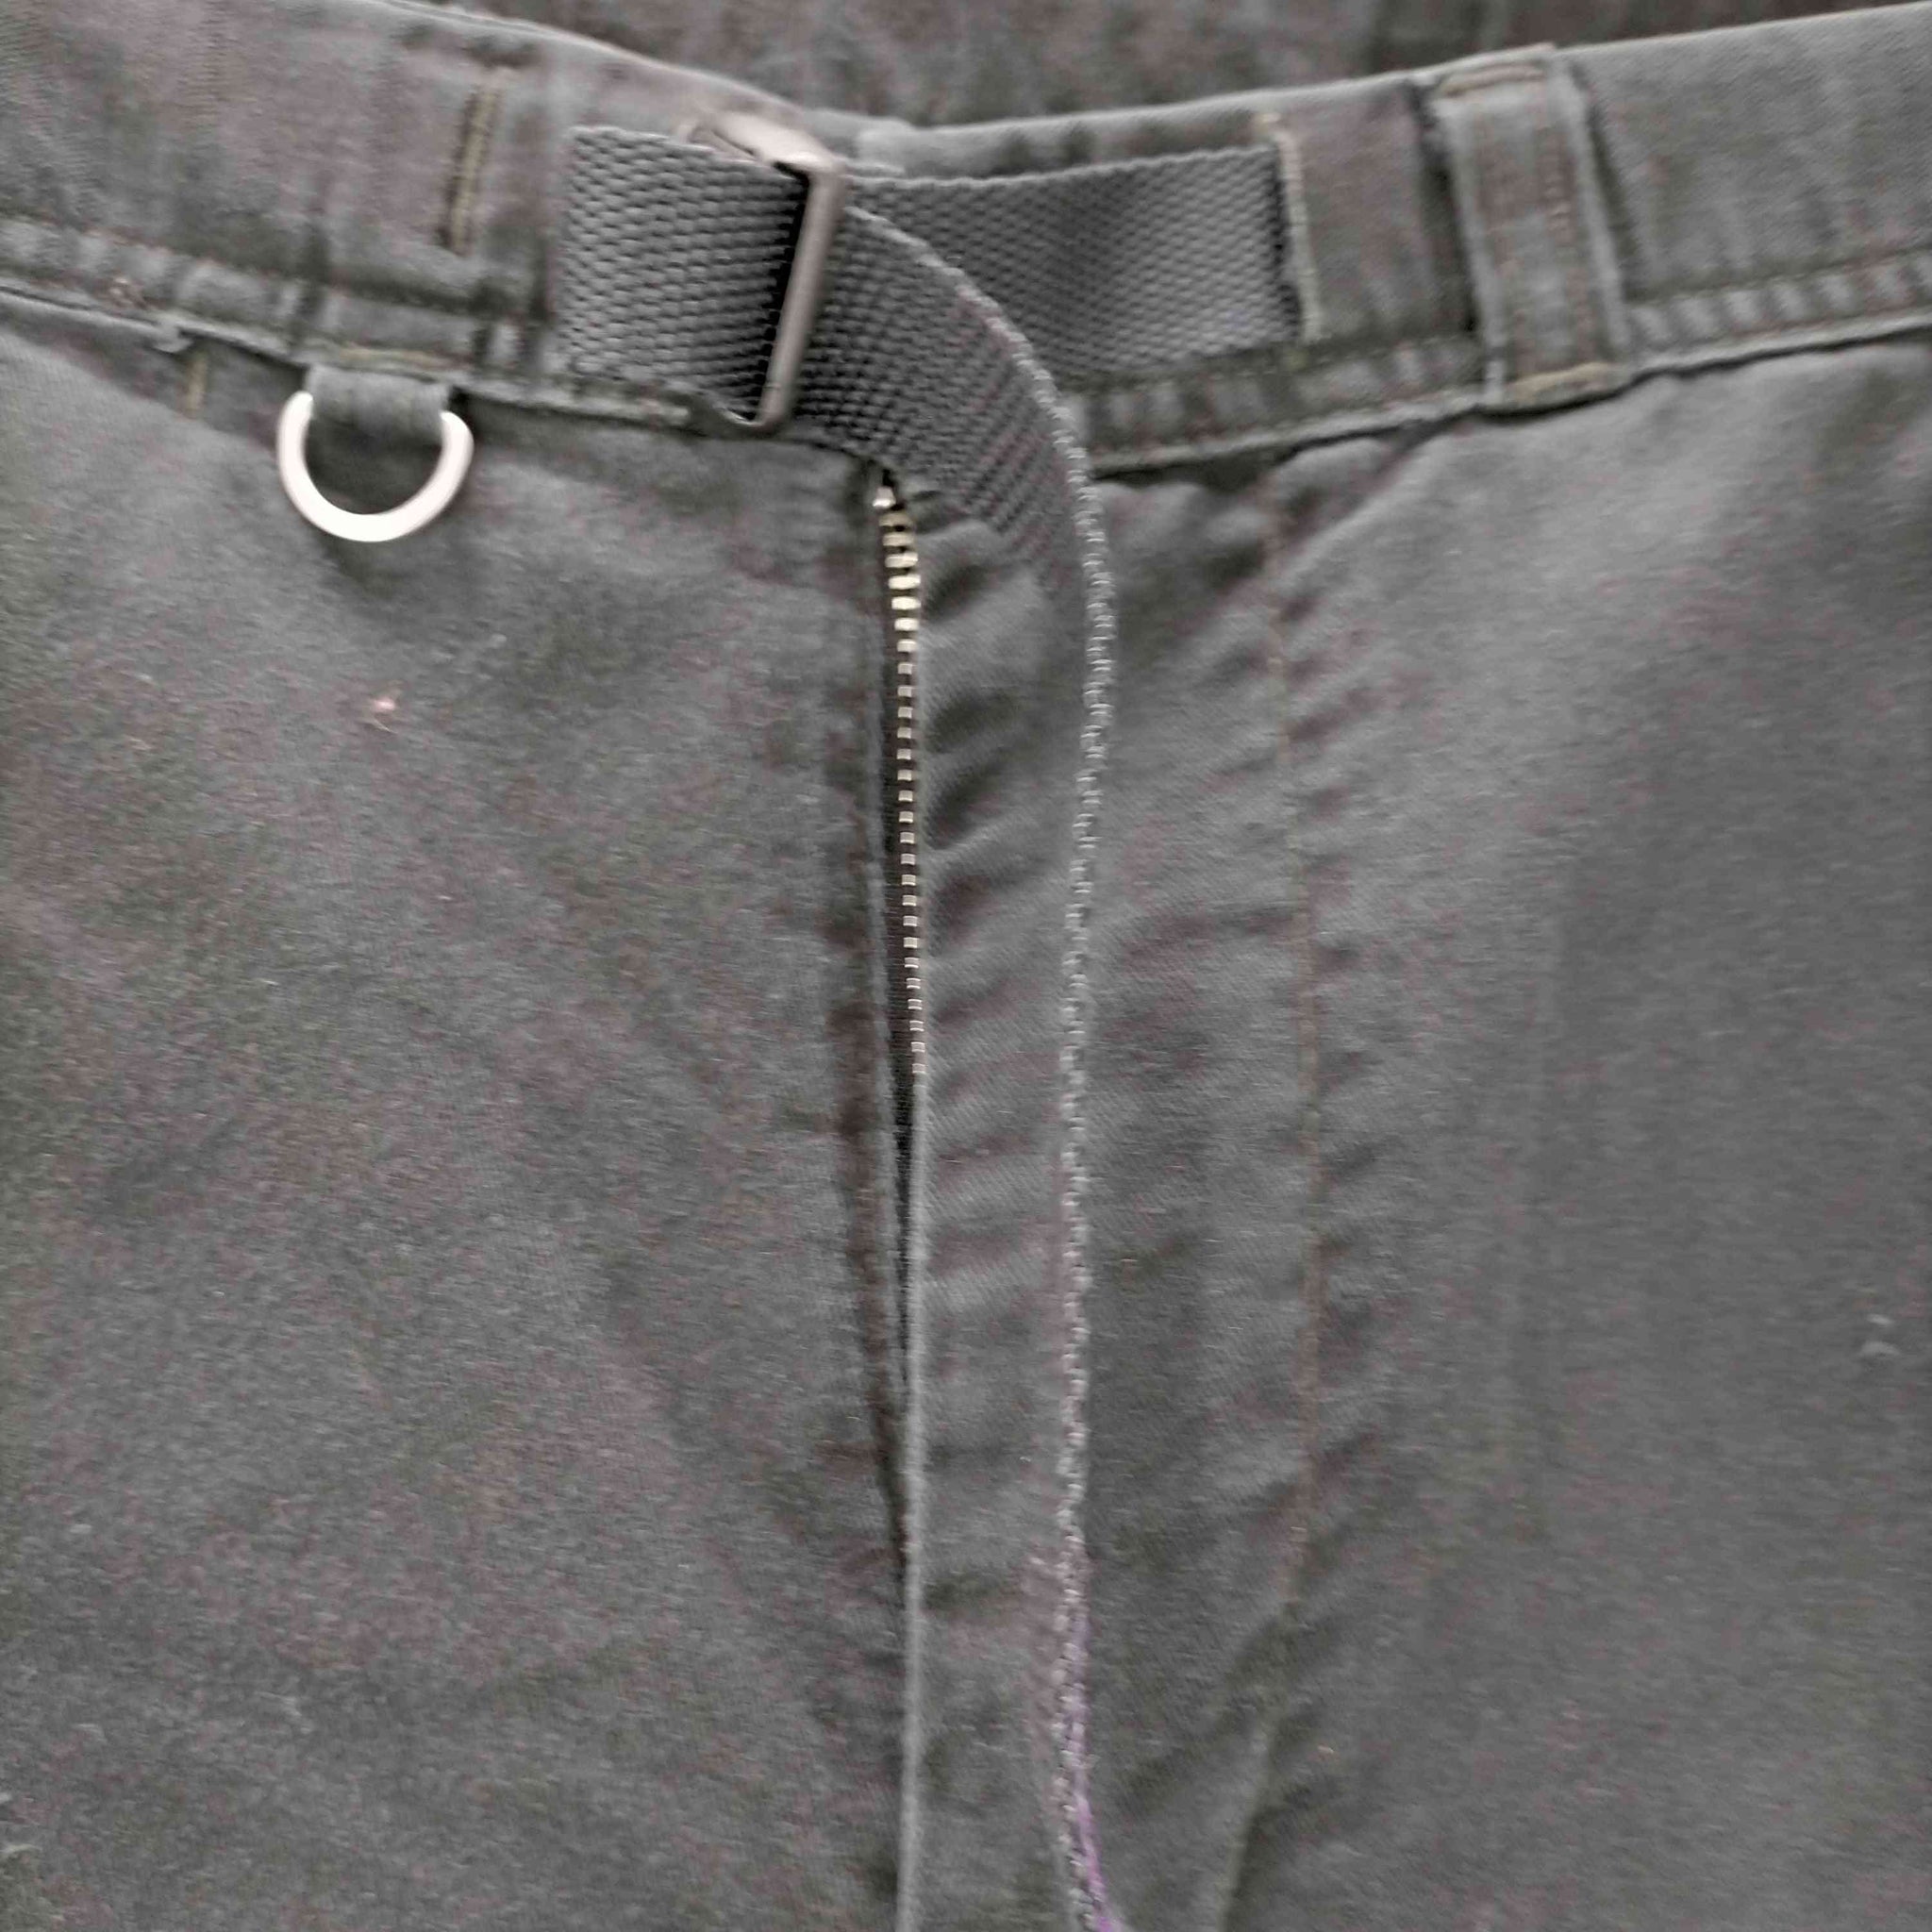 THE NORTH FACE PURPLE LABEL(ノースフェイスパープルレーベル)COOLMAX Stretch Twill Tapered Pants ストレッチ ツイル テーパード クライミング パンツ